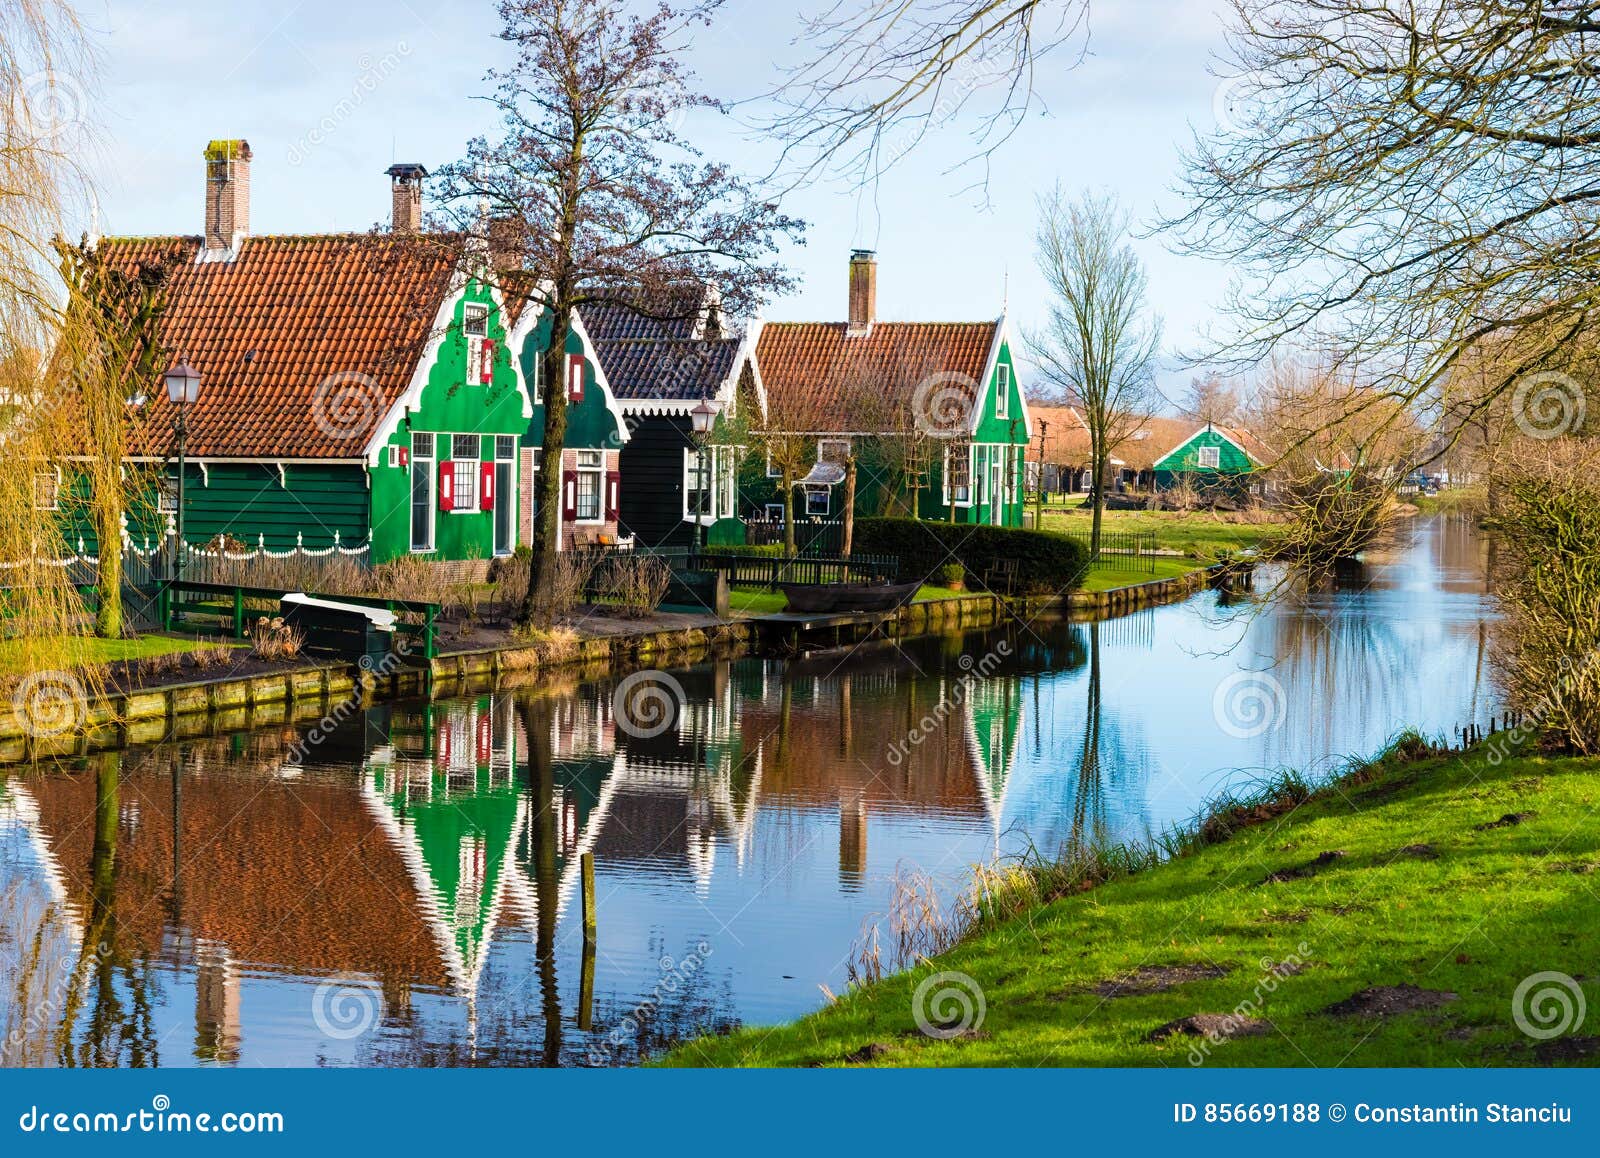 Rural Dutch Scenery in Zaanse Schans Village Editorial Stock Photo ...